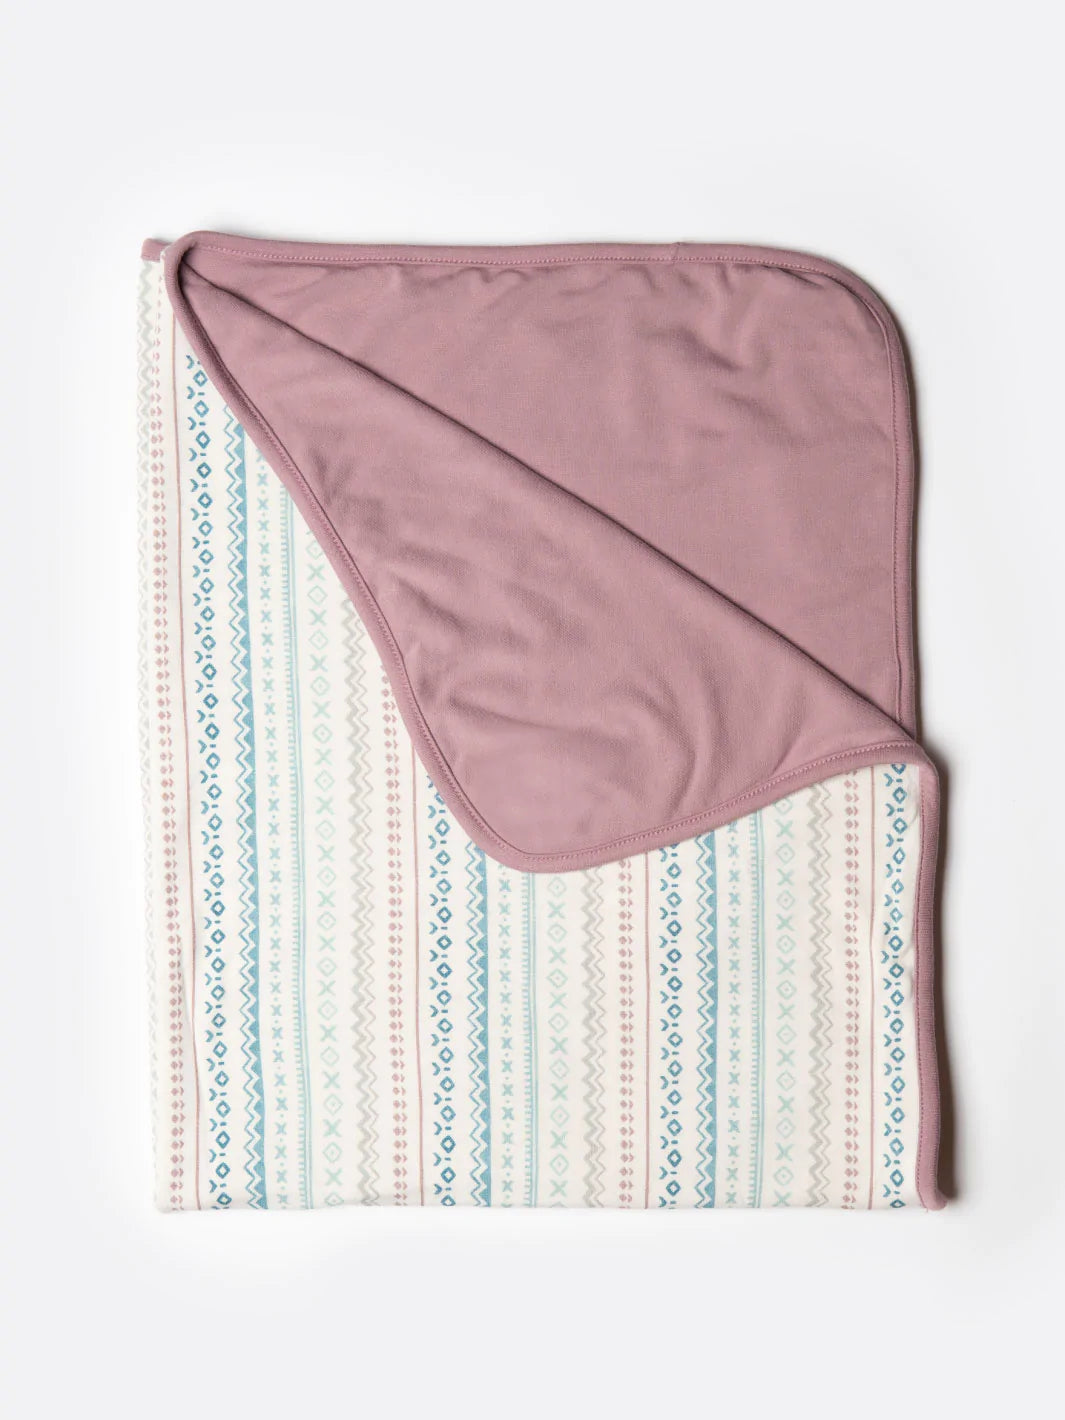 Bamboo Stretch Sweater Fleece Knit - Elderberry - Deadstock - 350gsm